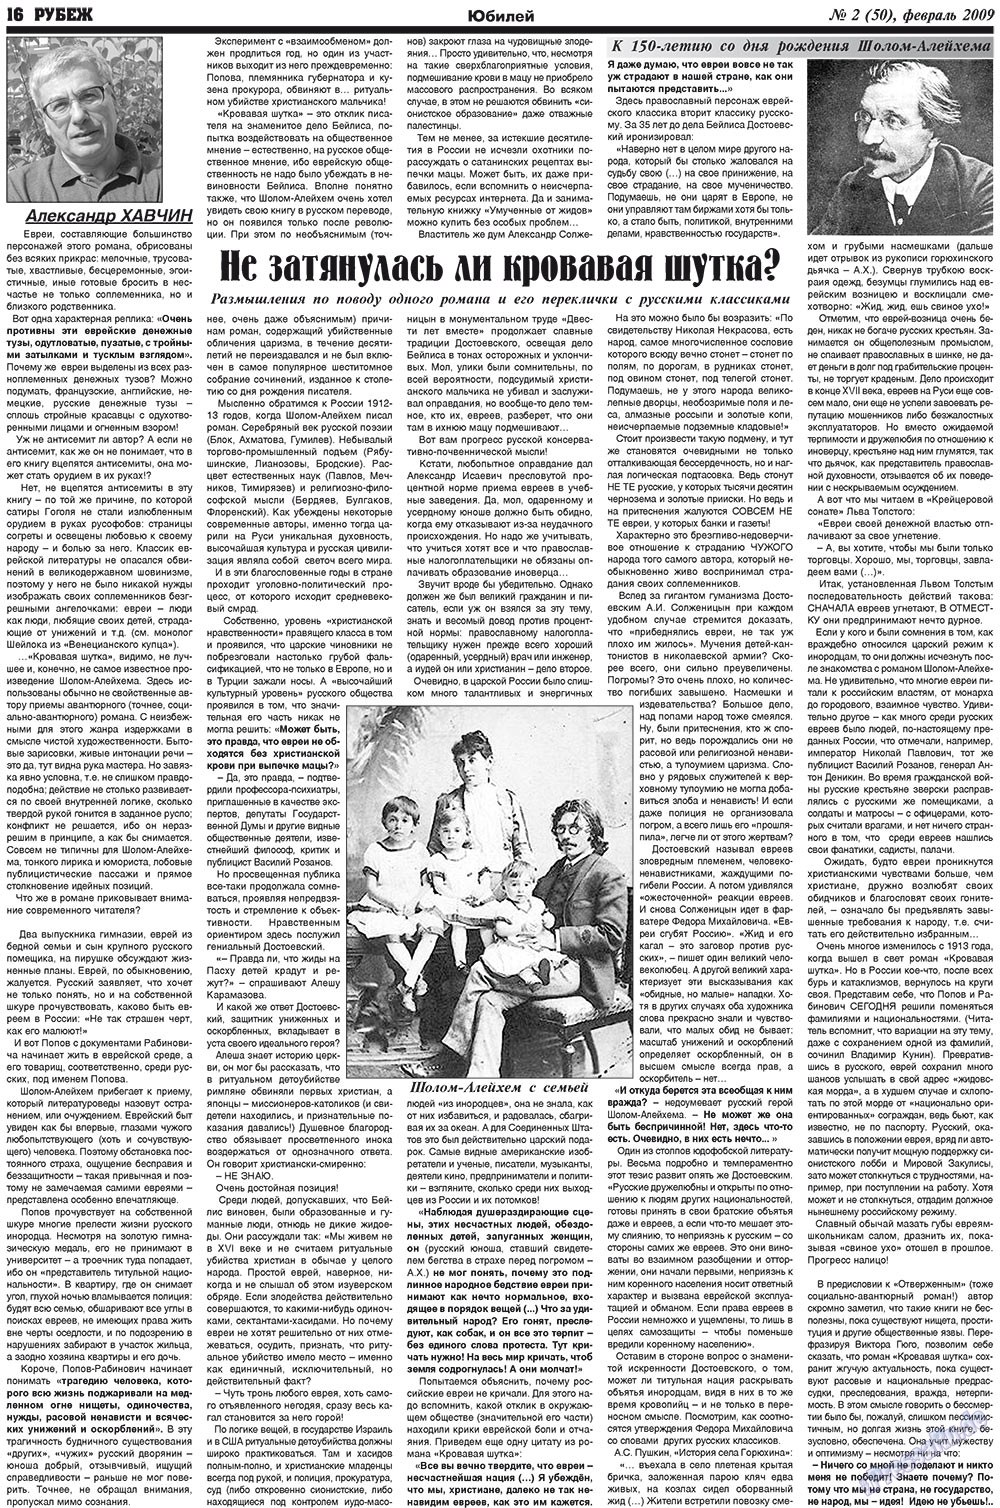 Рубеж (газета). 2009 год, номер 2, стр. 16